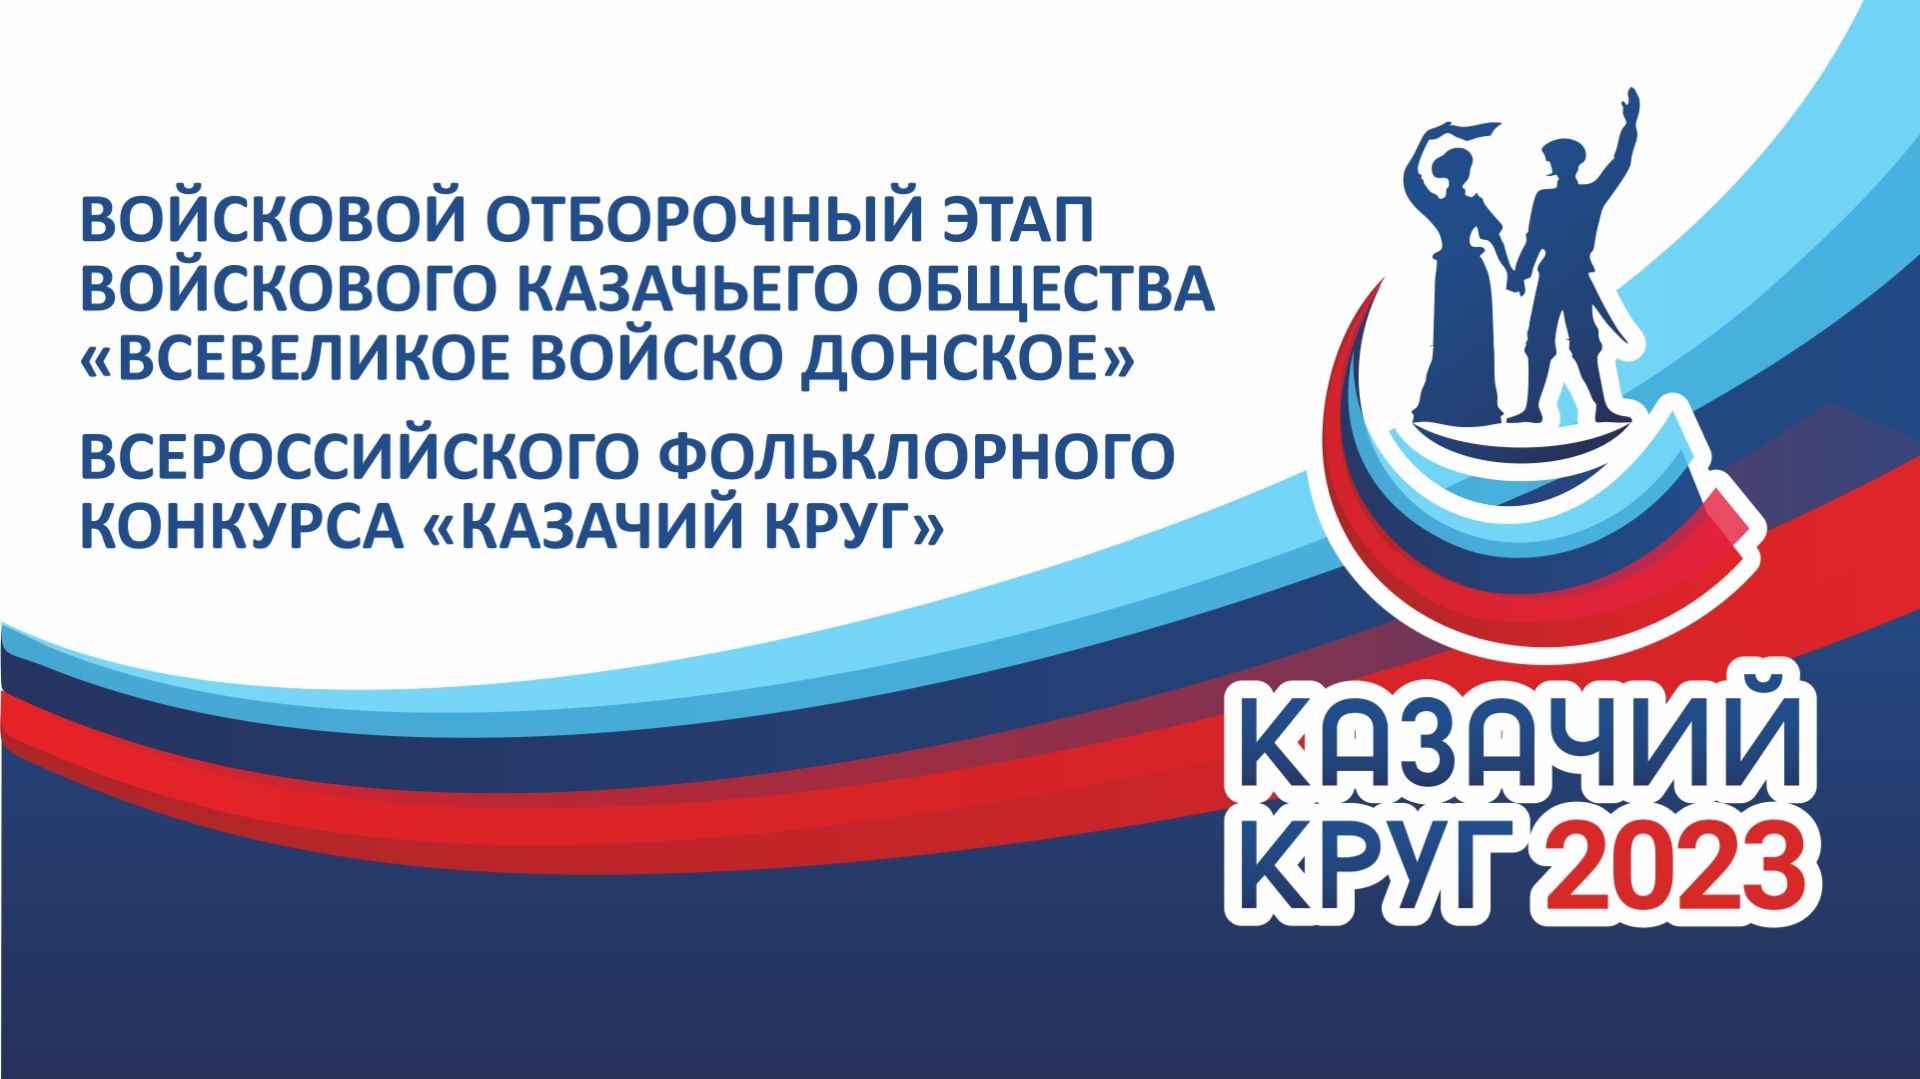 В Астрахани пройдет войсковой отборочный этап Всероссийского конкурса «Казачий круг»